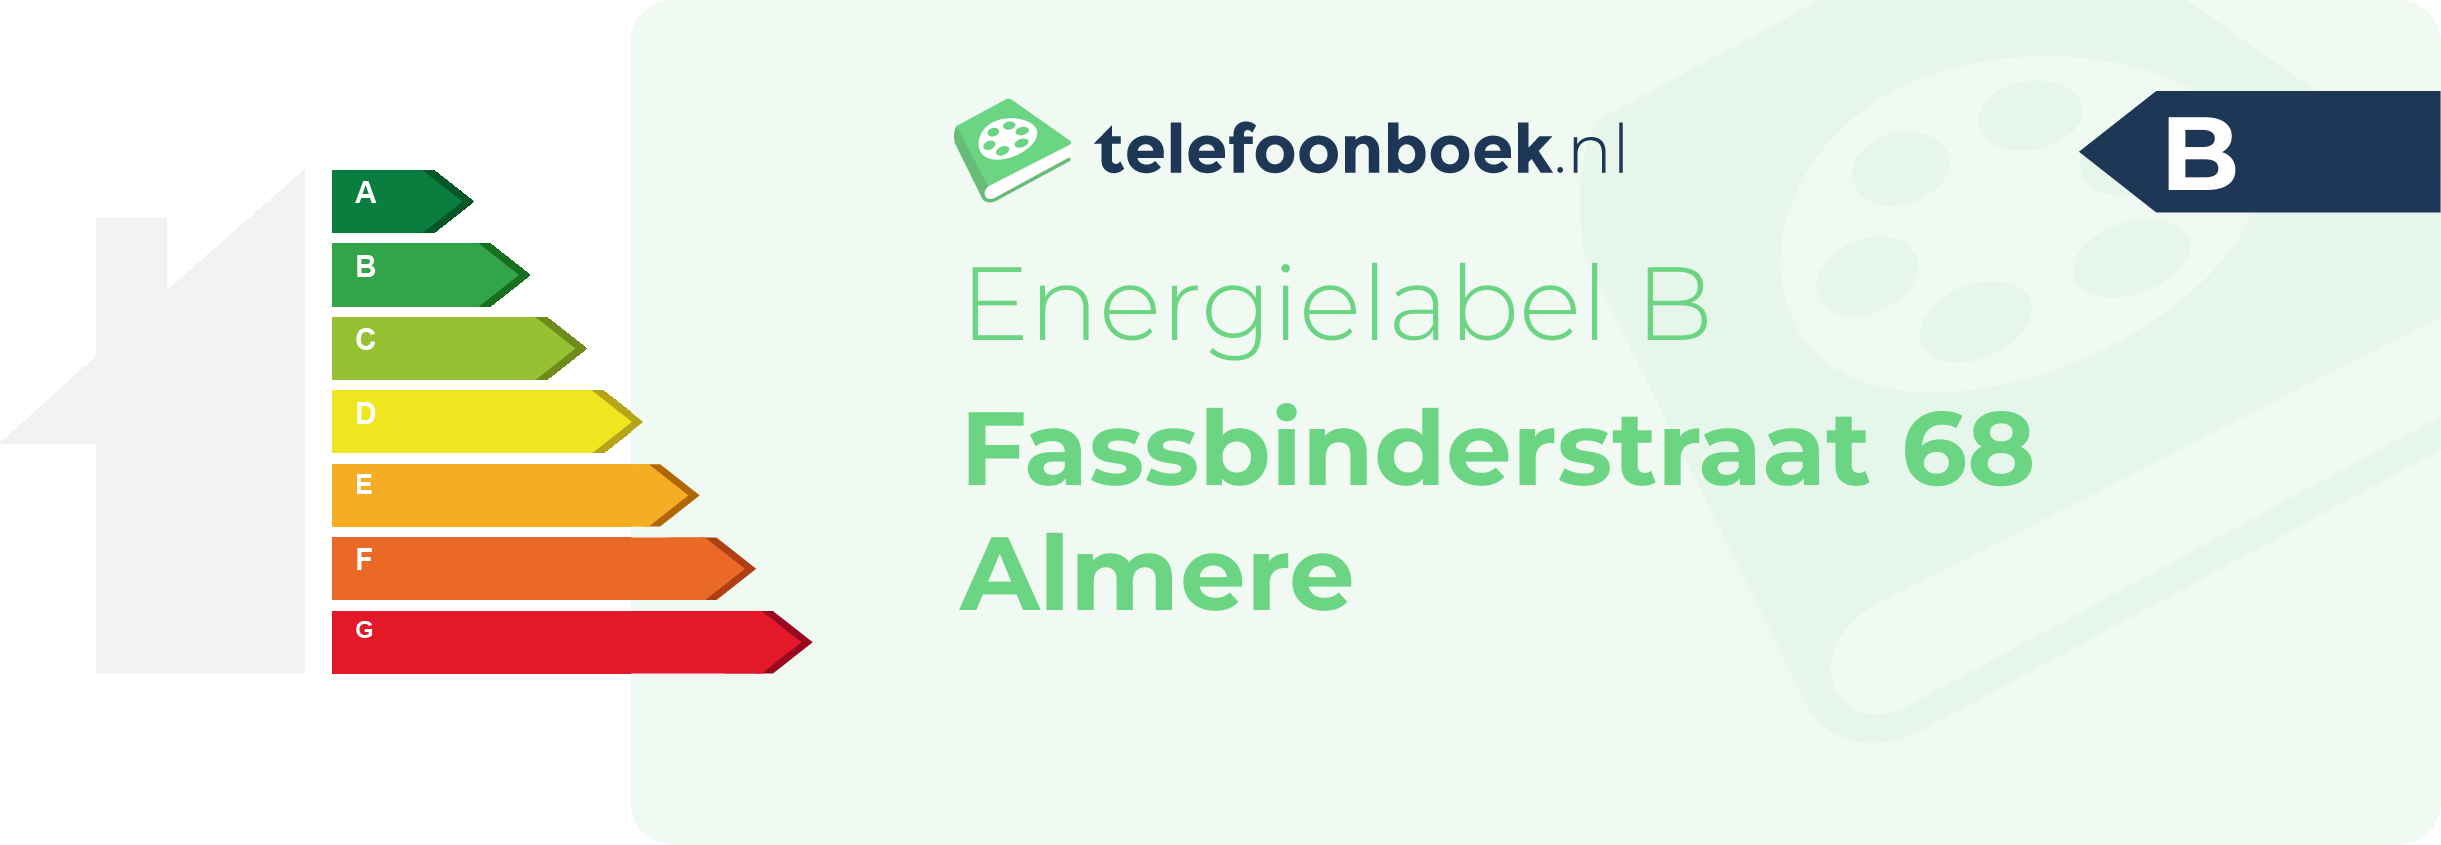 Energielabel Fassbinderstraat 68 Almere